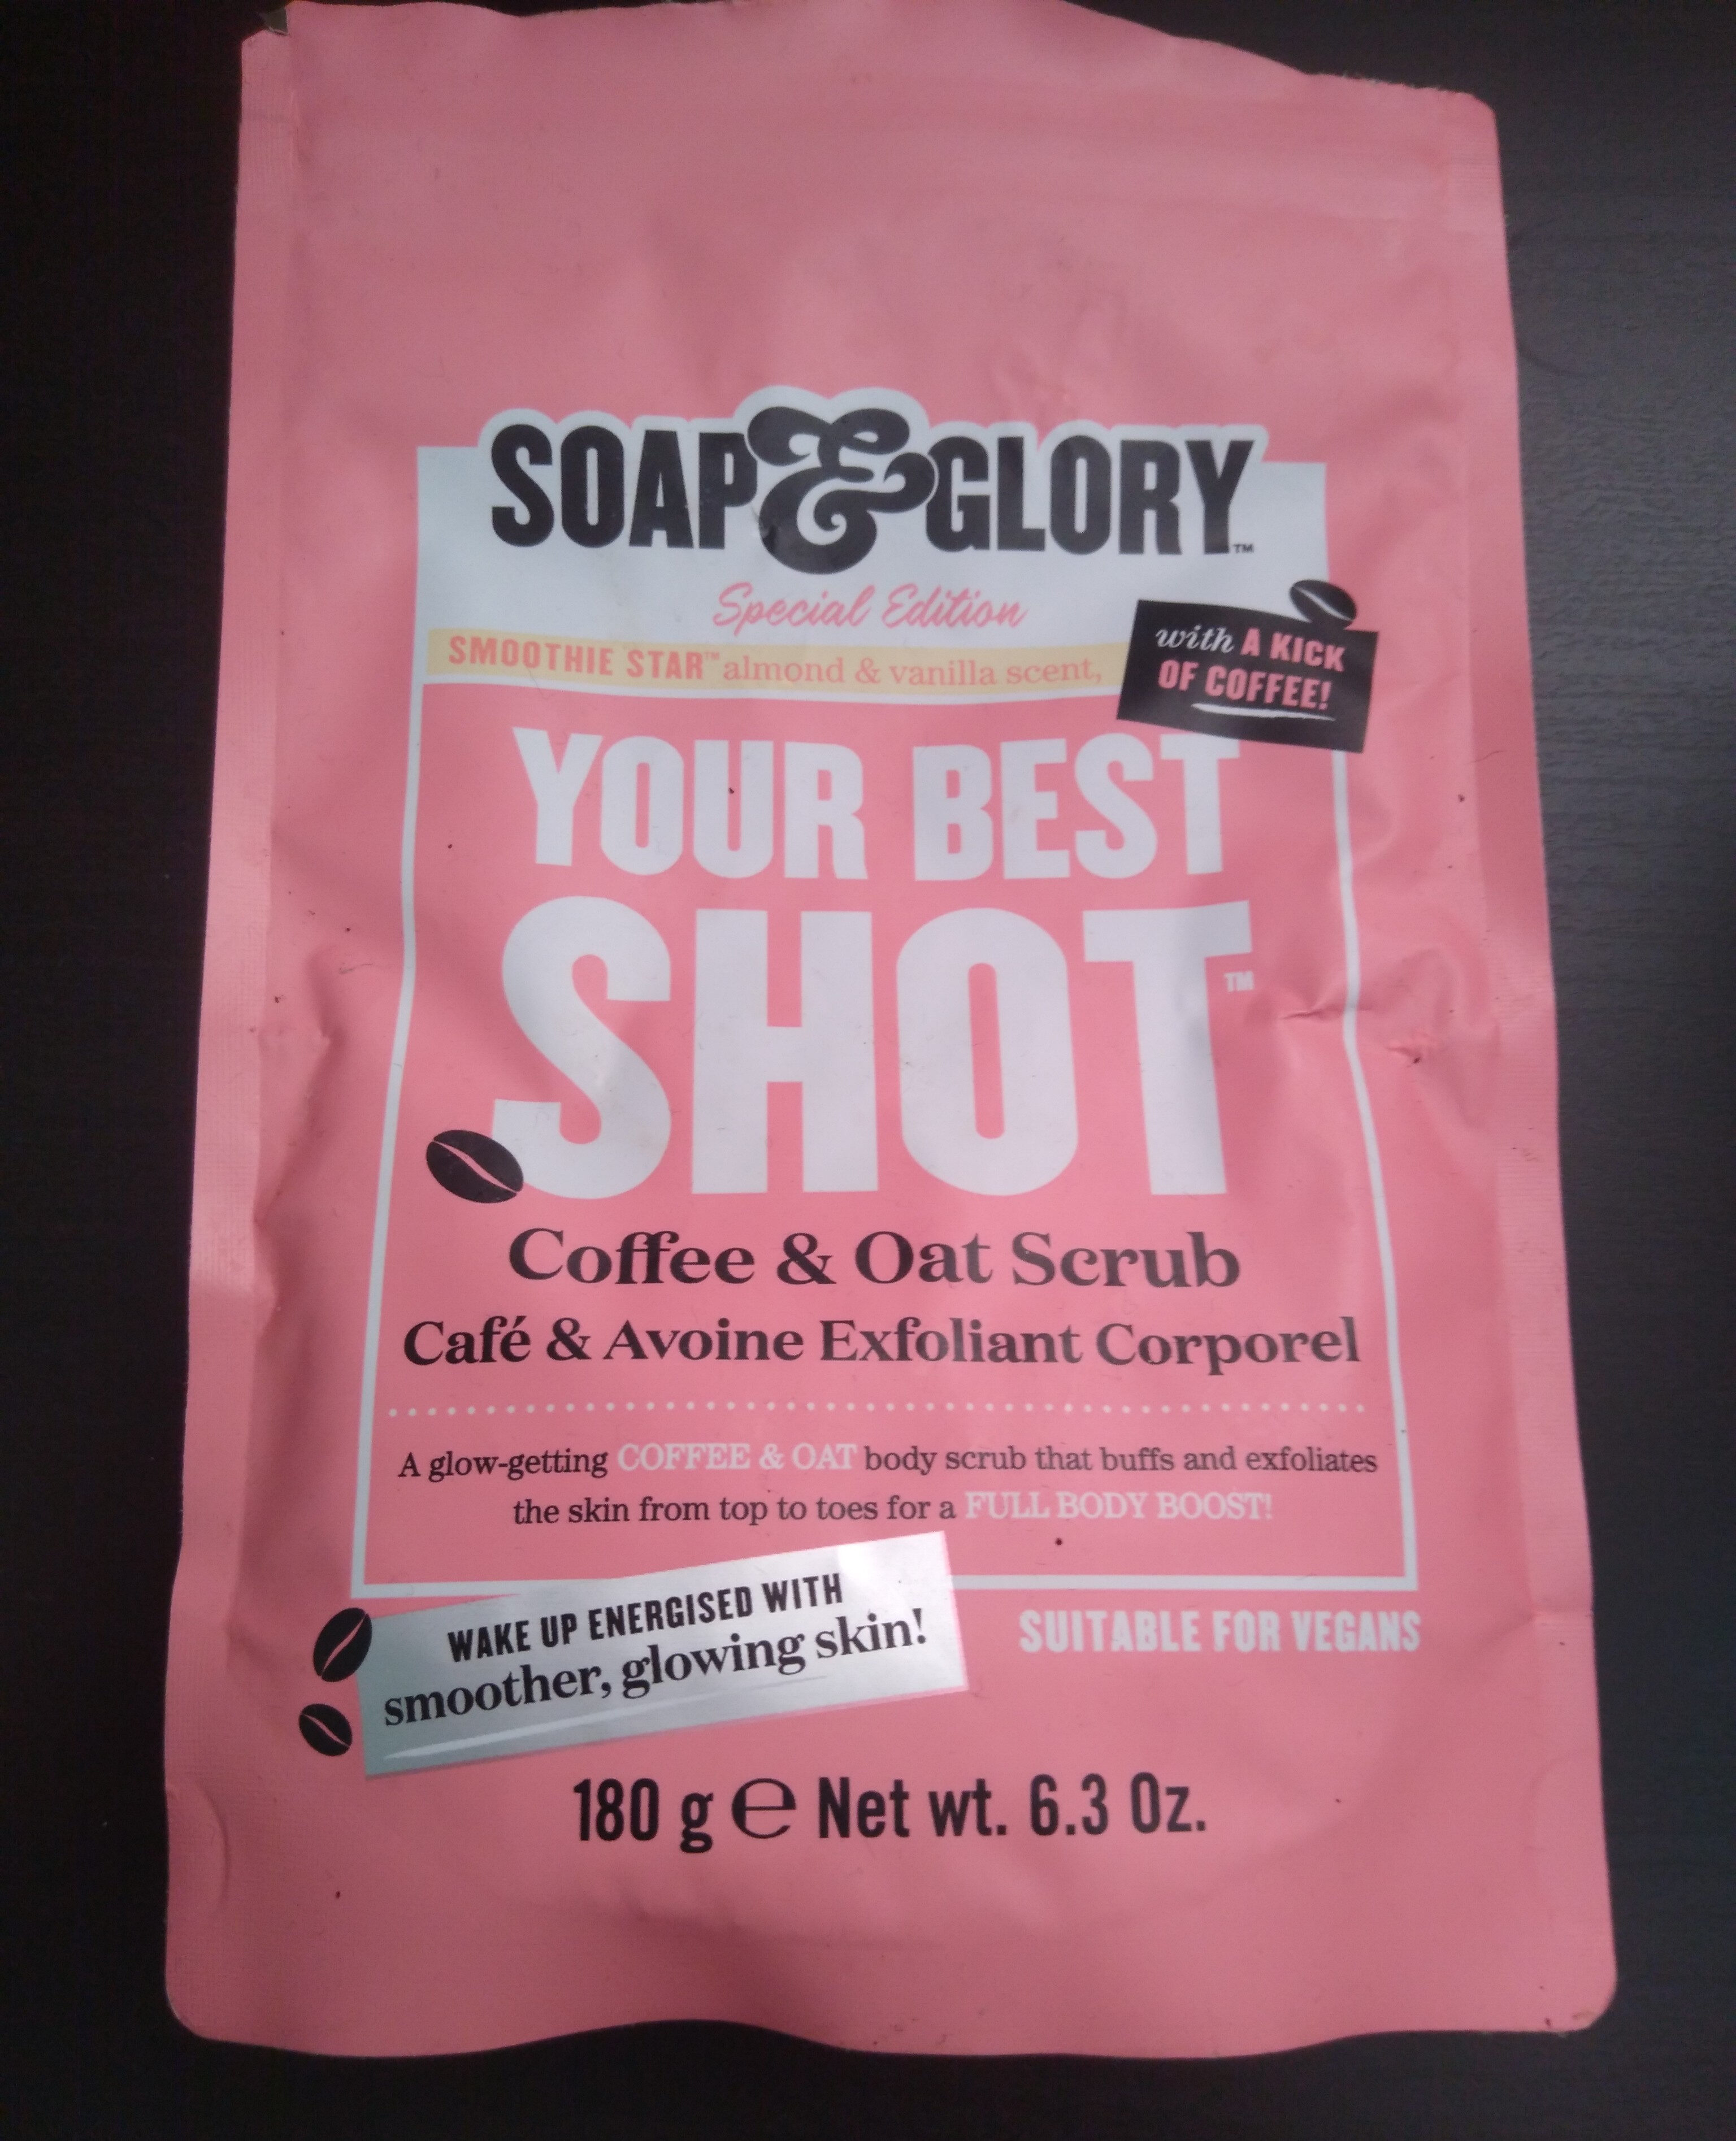 Coffee & Oat Scrub - Produit - en